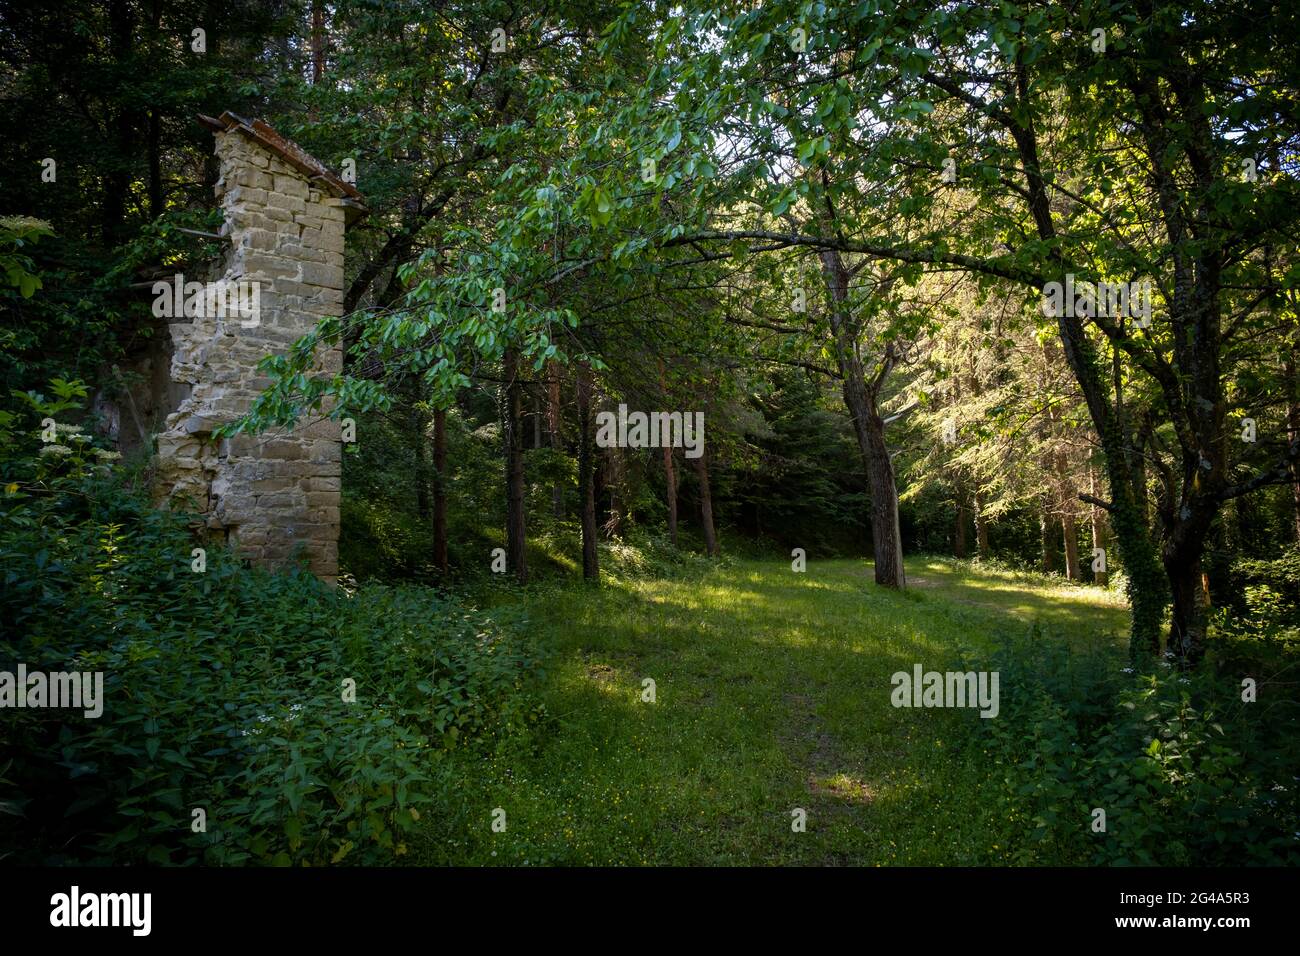 Ruins in the wood. Podere Montebello, Modigliana, Forlì, Emilia Romagna, Italy, Europe. Stock Photo